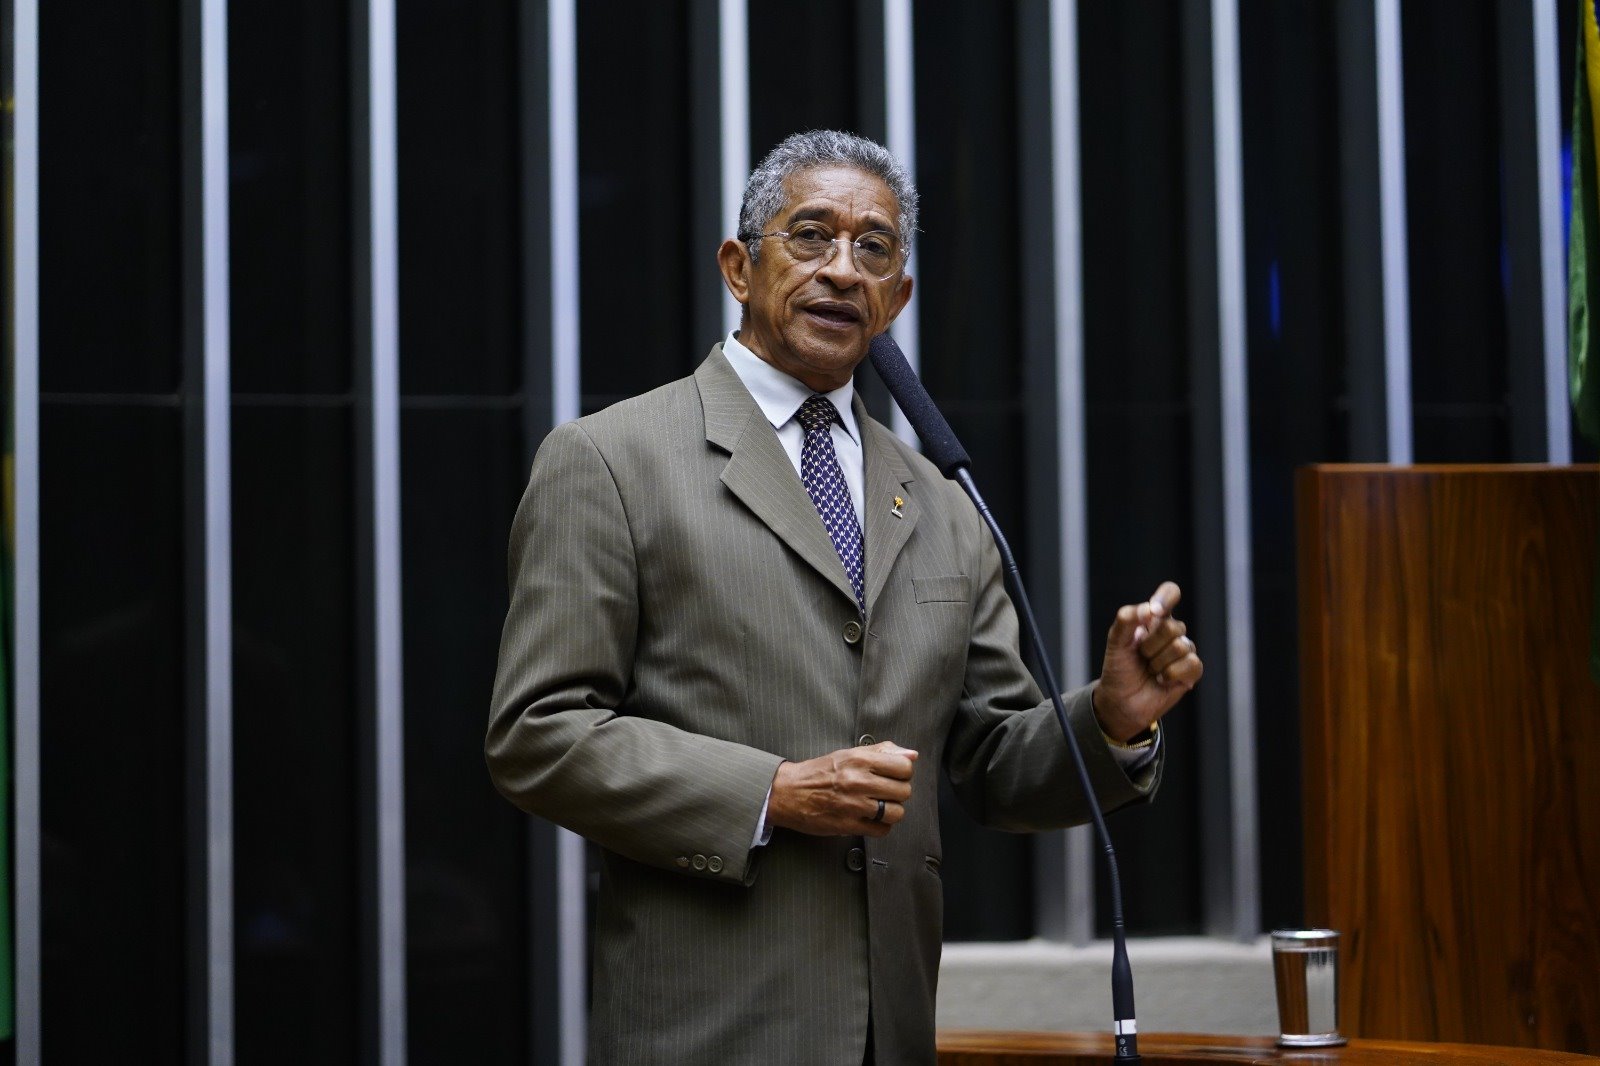 Retrato do deputado federal Vicentinho (PT-SP) na tribuna do Plenário da Câmara dos Deputados. Ele é um homem negro. Veste camisa social branca e púrpura com um terno cinza esverdeado.